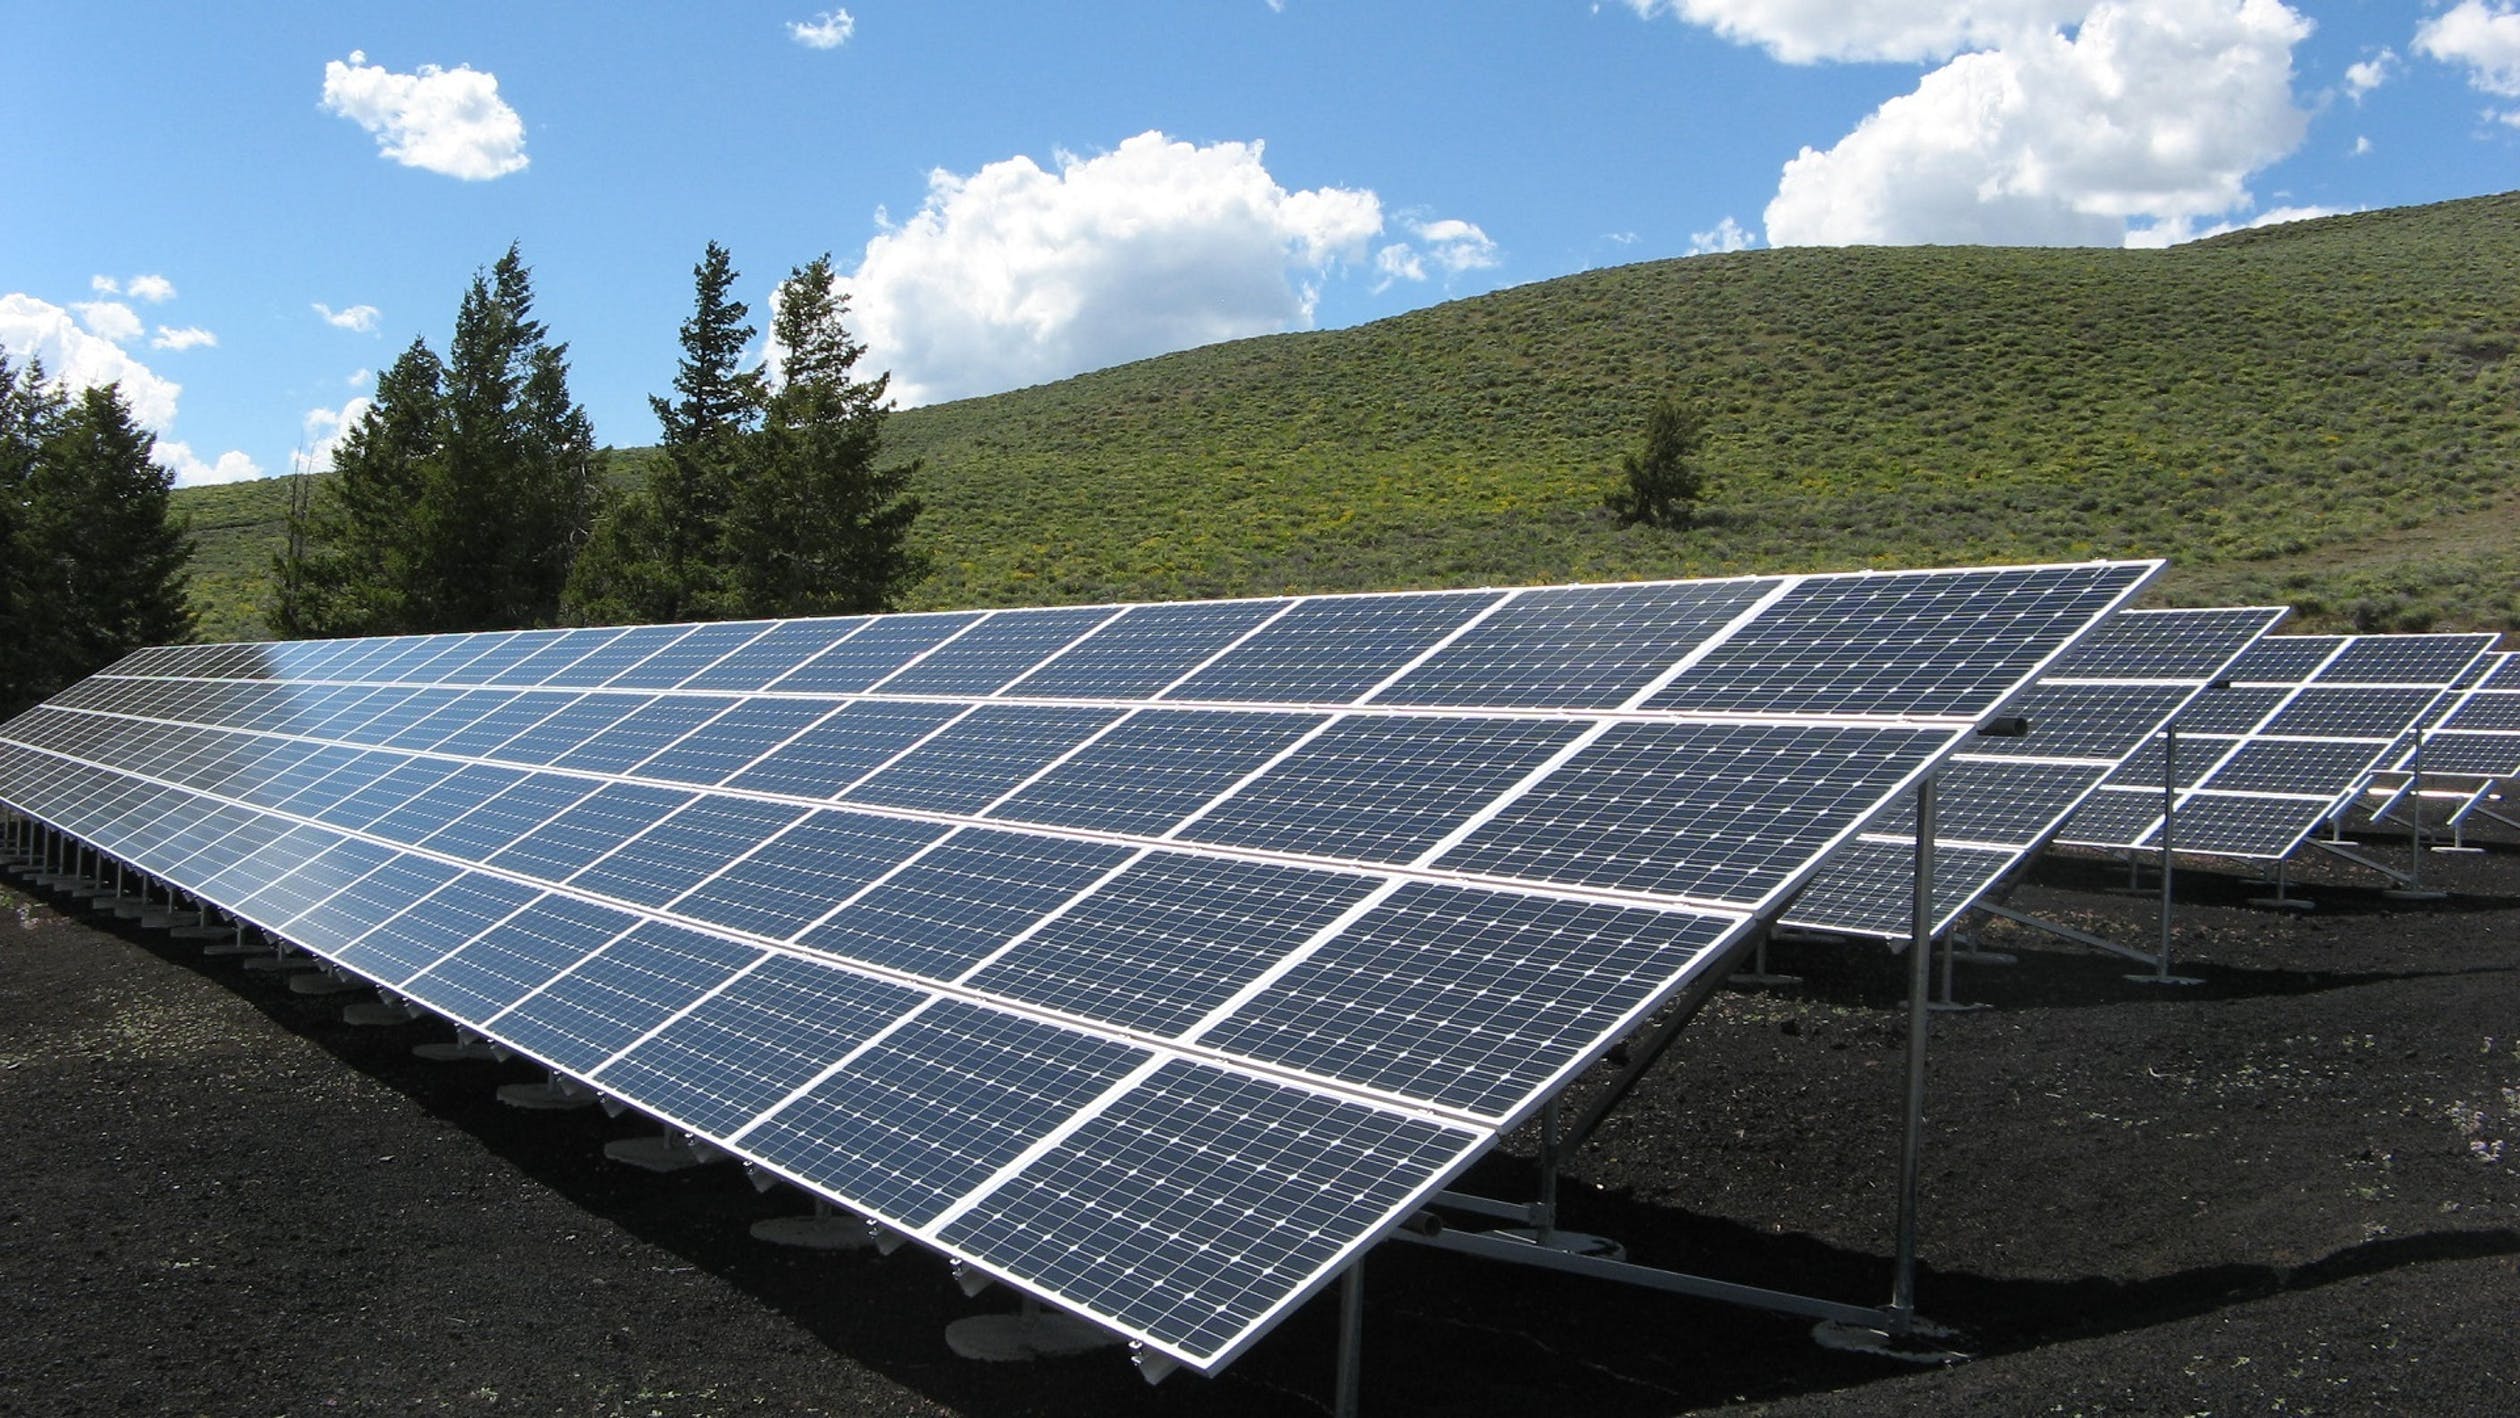 financiering zonnepanelen zakelijk